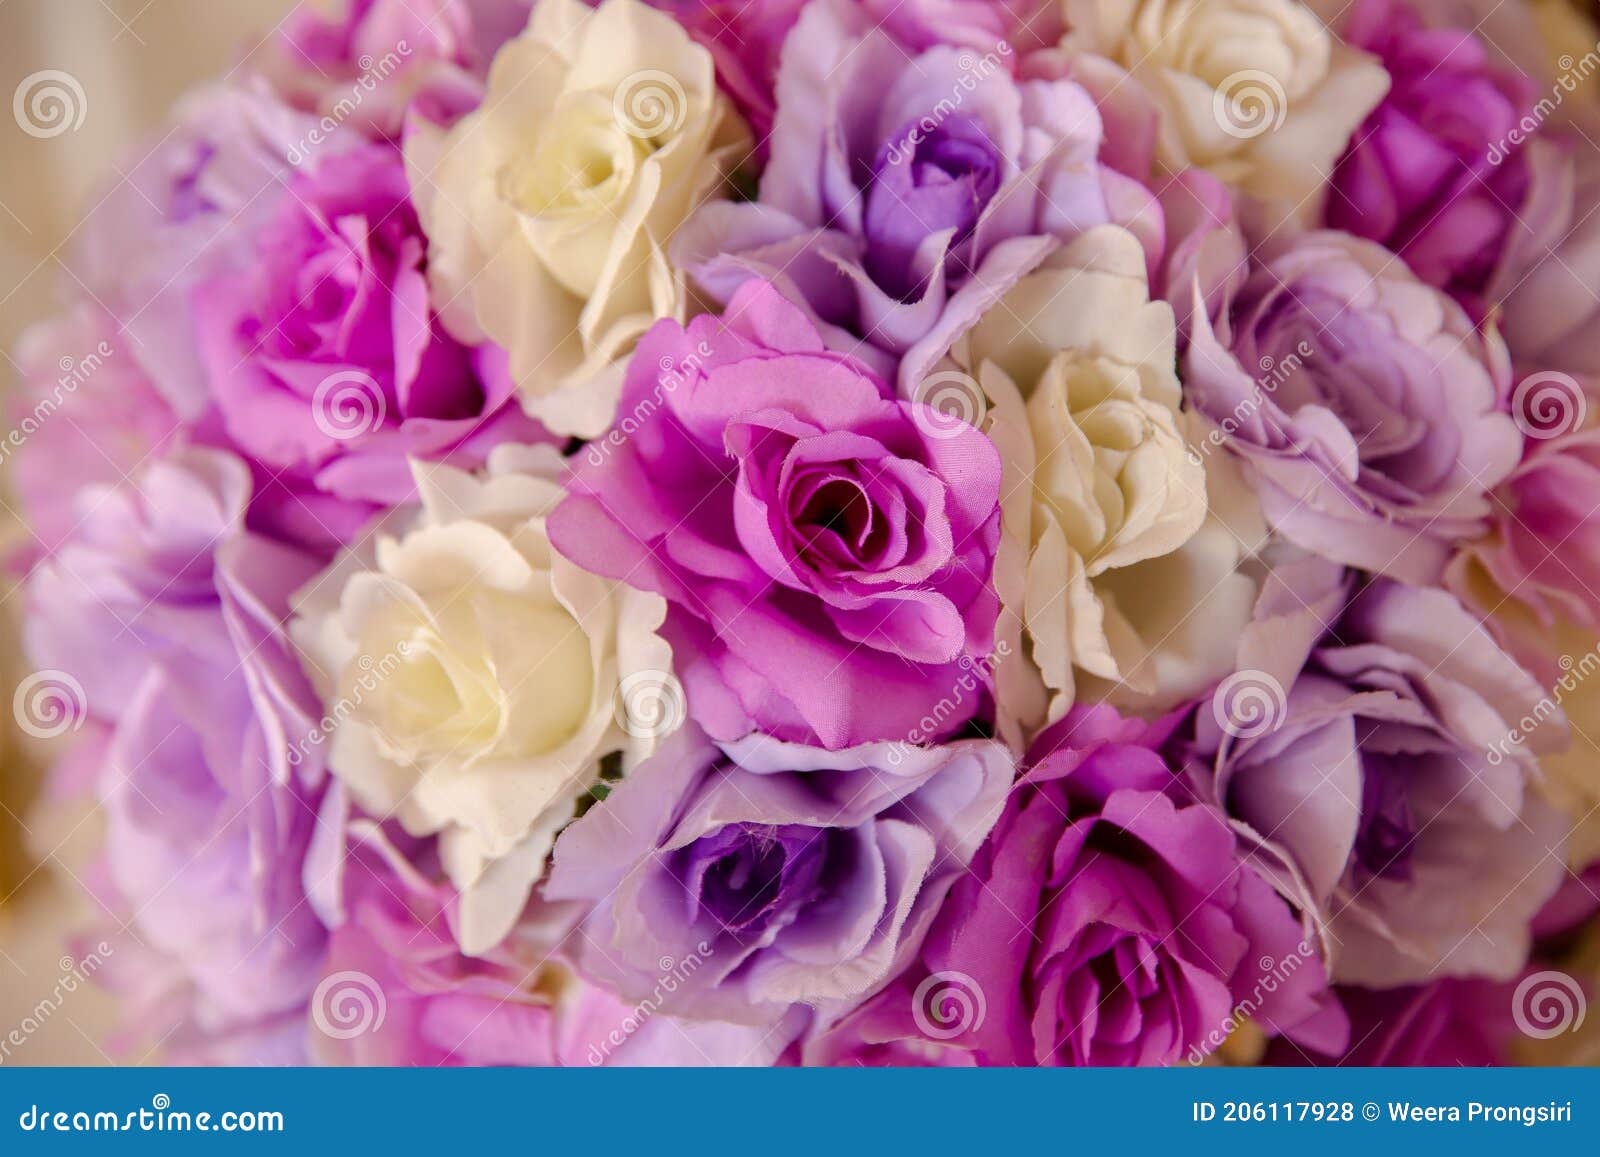 Arranjo De Flores Artificiais Da Tailândia Foto de Stock - Imagem de  backdrop, colorido: 206117928